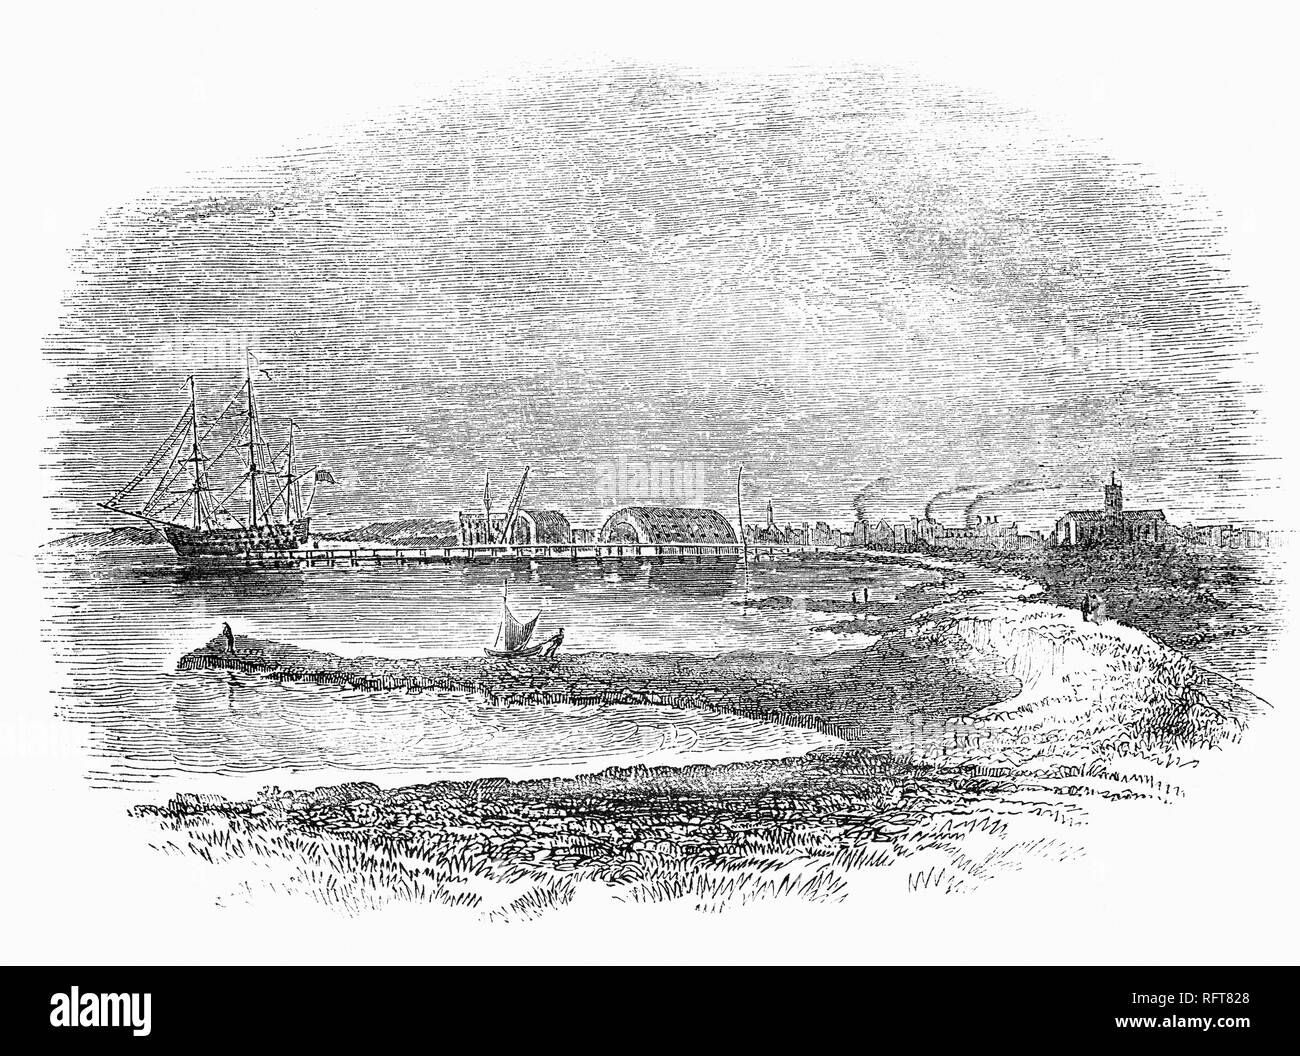 Aussi connu sous le nom de l'arsenal Sheerness Sheerness la station a été un arsenal de la Marine royale situé sur la péninsule de Sheerness, à l'embouchure de la rivière Medway dans le Kent a ouvert dans les années 1660. Au départ, il a fonctionné comme une extension à Chatham et a été conçu principalement pour la réparation et l'entretien de navires de guerre et de la construction navale n'a eu lieu avant 1691. La première cale sèche a été achevé en 1708 ; un deuxième a été ajouté en 1720 avec accès par l'intermédiaire d'un bassin de marée, connu sous le nom de dock de boue. L'arsenal a commencé à prendre de l'expansion et en 1800, l'arsenal avait rempli tout l'espace disponible. Banque D'Images